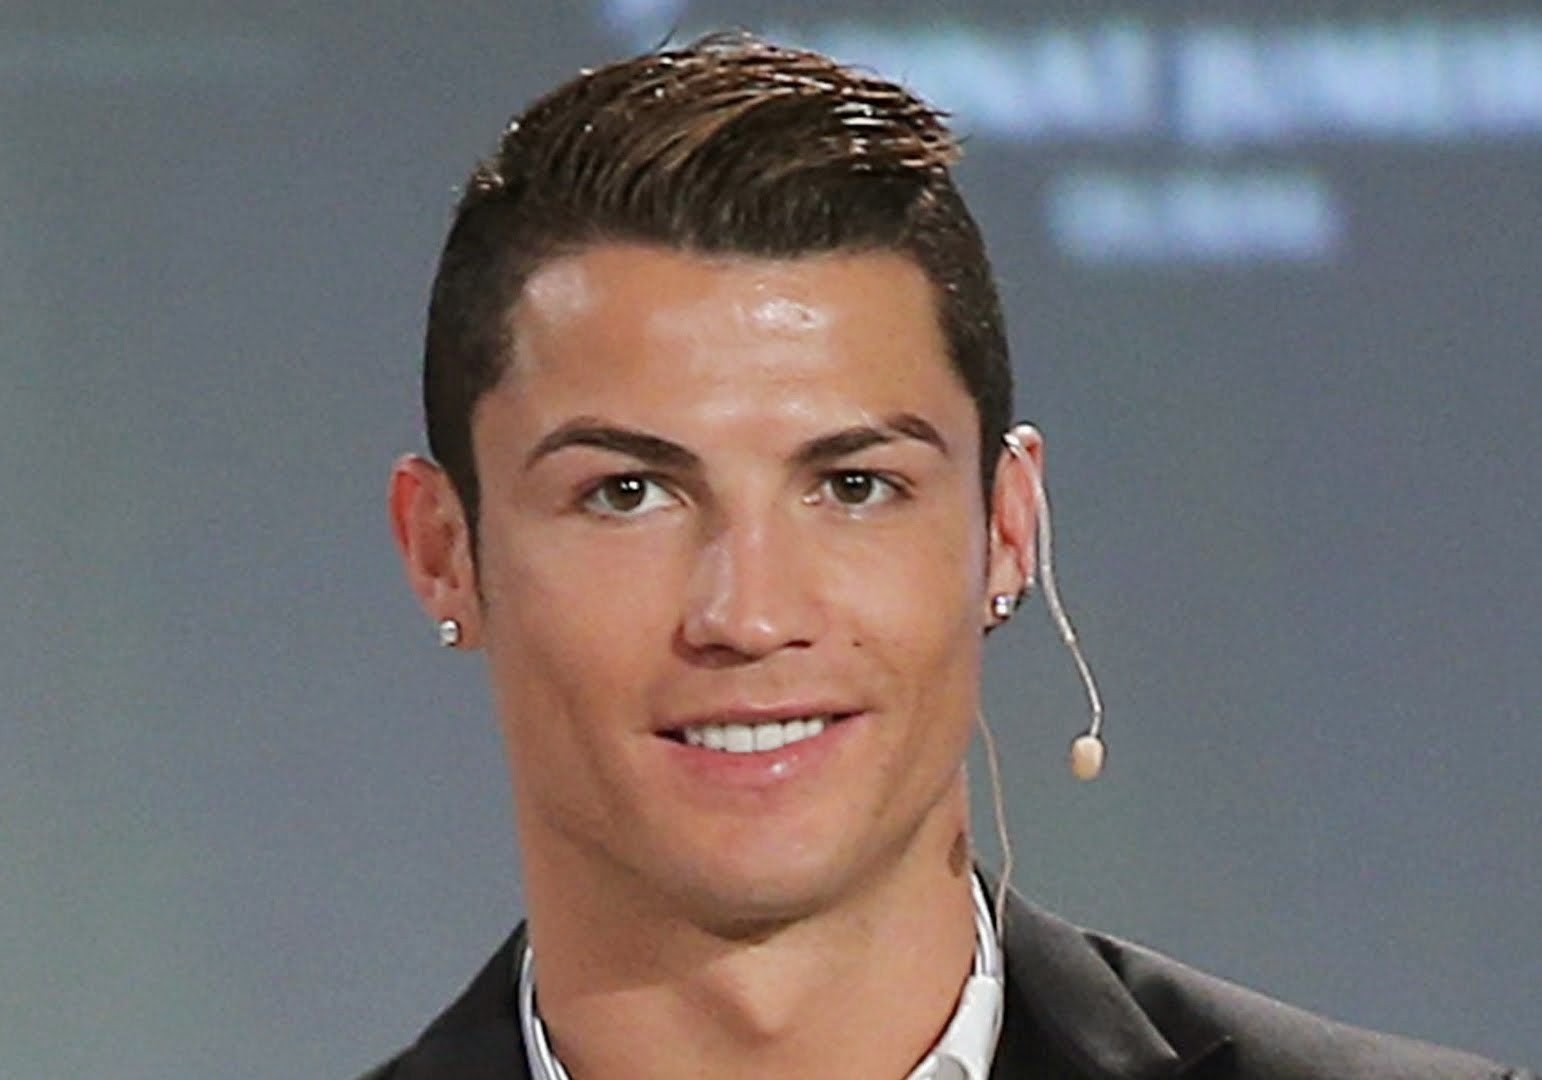 Gaya Rambut Ronaldo Terbaru 2015, Dari samping, Depan dan 